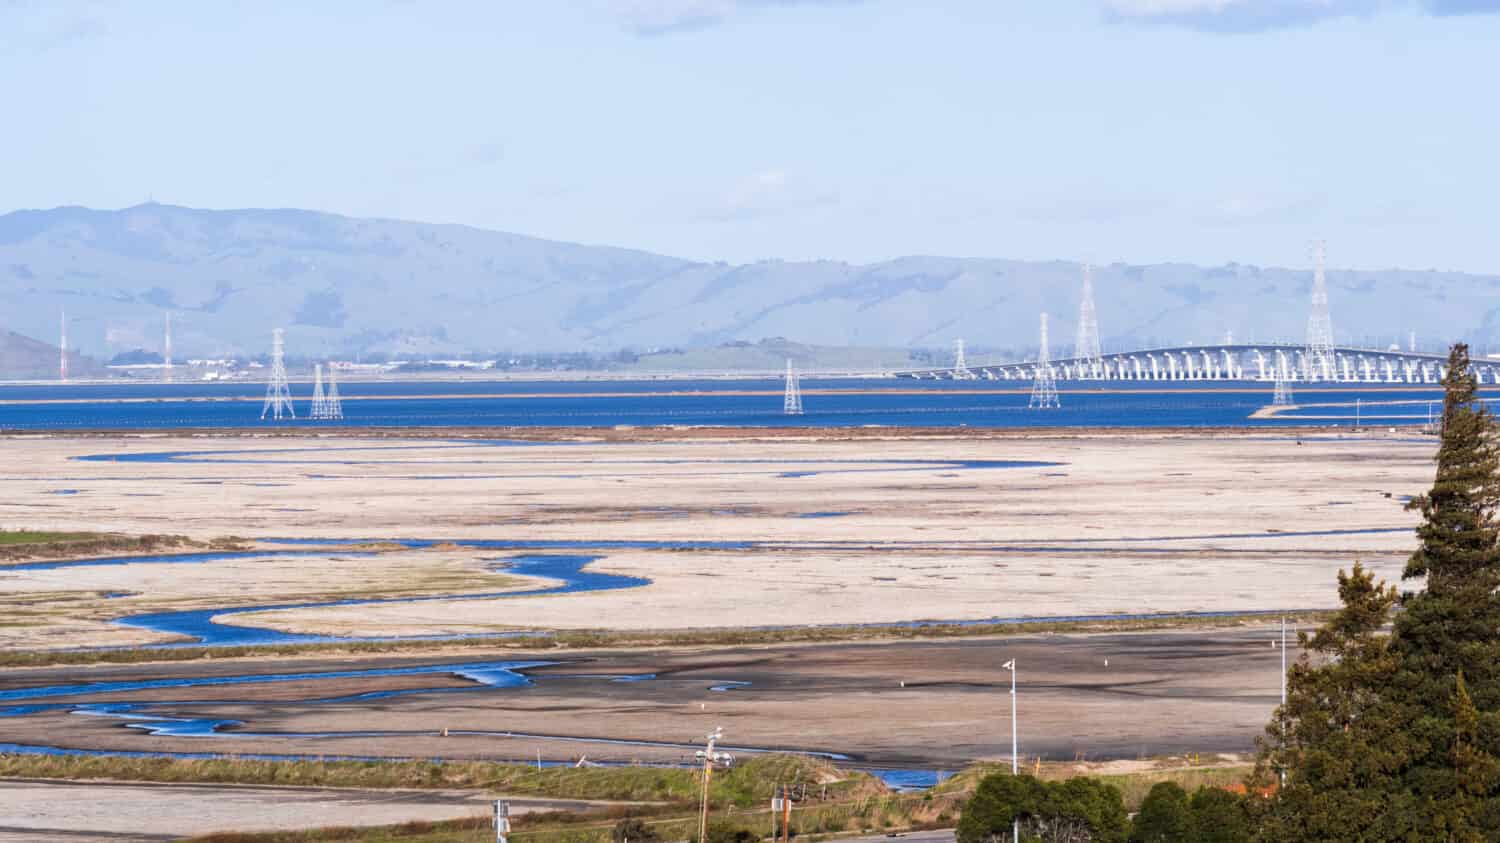 Sale che si accumula sugli stagni poco profondi della baia di San Francisco con la bassa marea, torri elettriche e ponte Dumbarton sullo sfondo, California